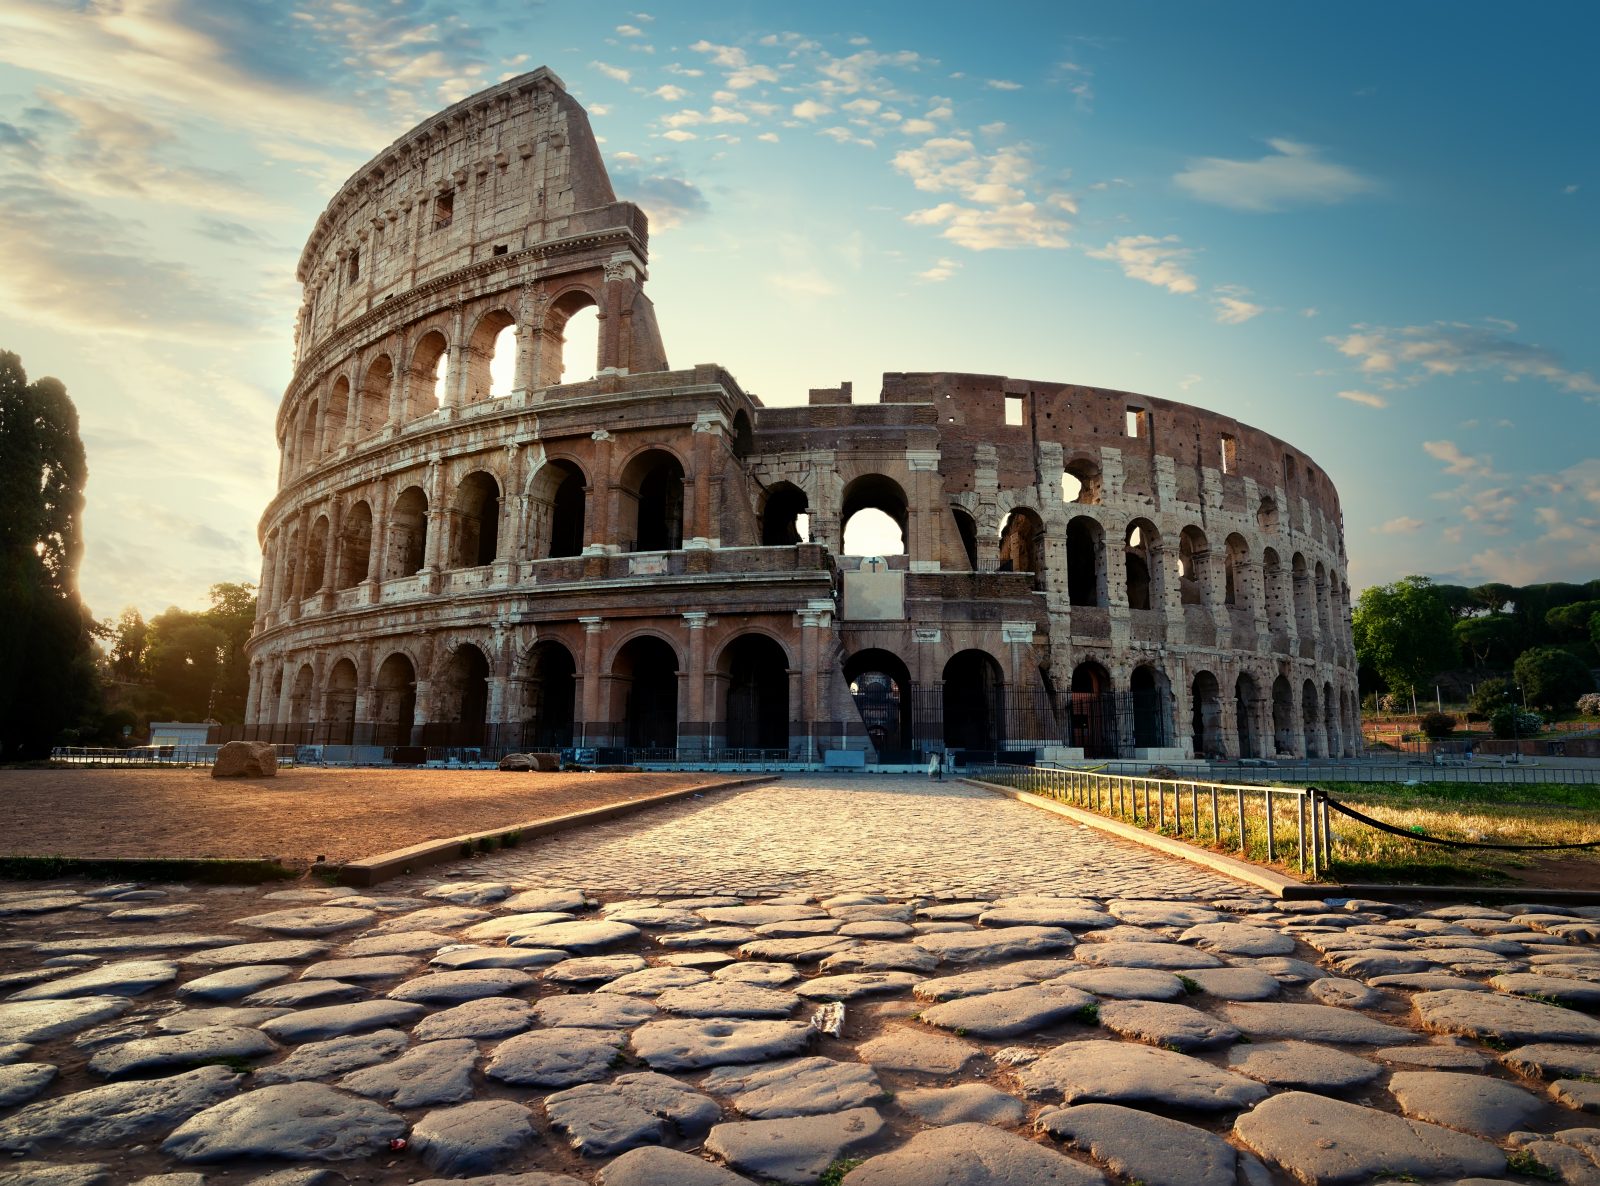 Vstupenka na atrakci Koloseum – najděte nejlevnější cenu